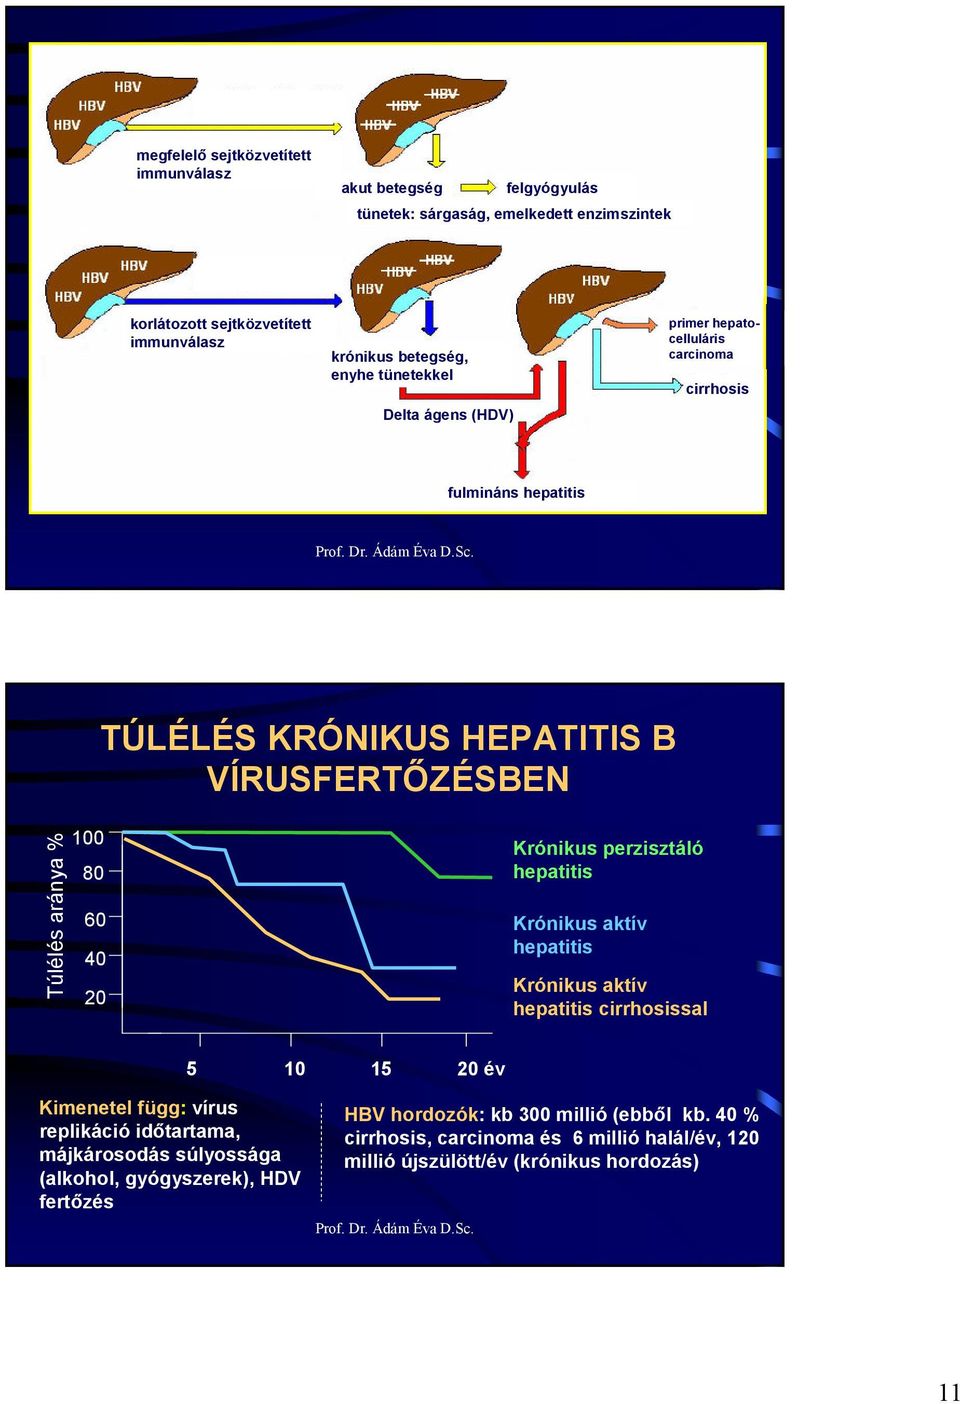 20 Krónikus perzisztáló hepatitis Krónikus aktív hepatitis Krónikus aktív hepatitis cirrhosissal 5 10 15 20 év Kimenetel függ: vírus replikáció idıtartama, májkárosodás